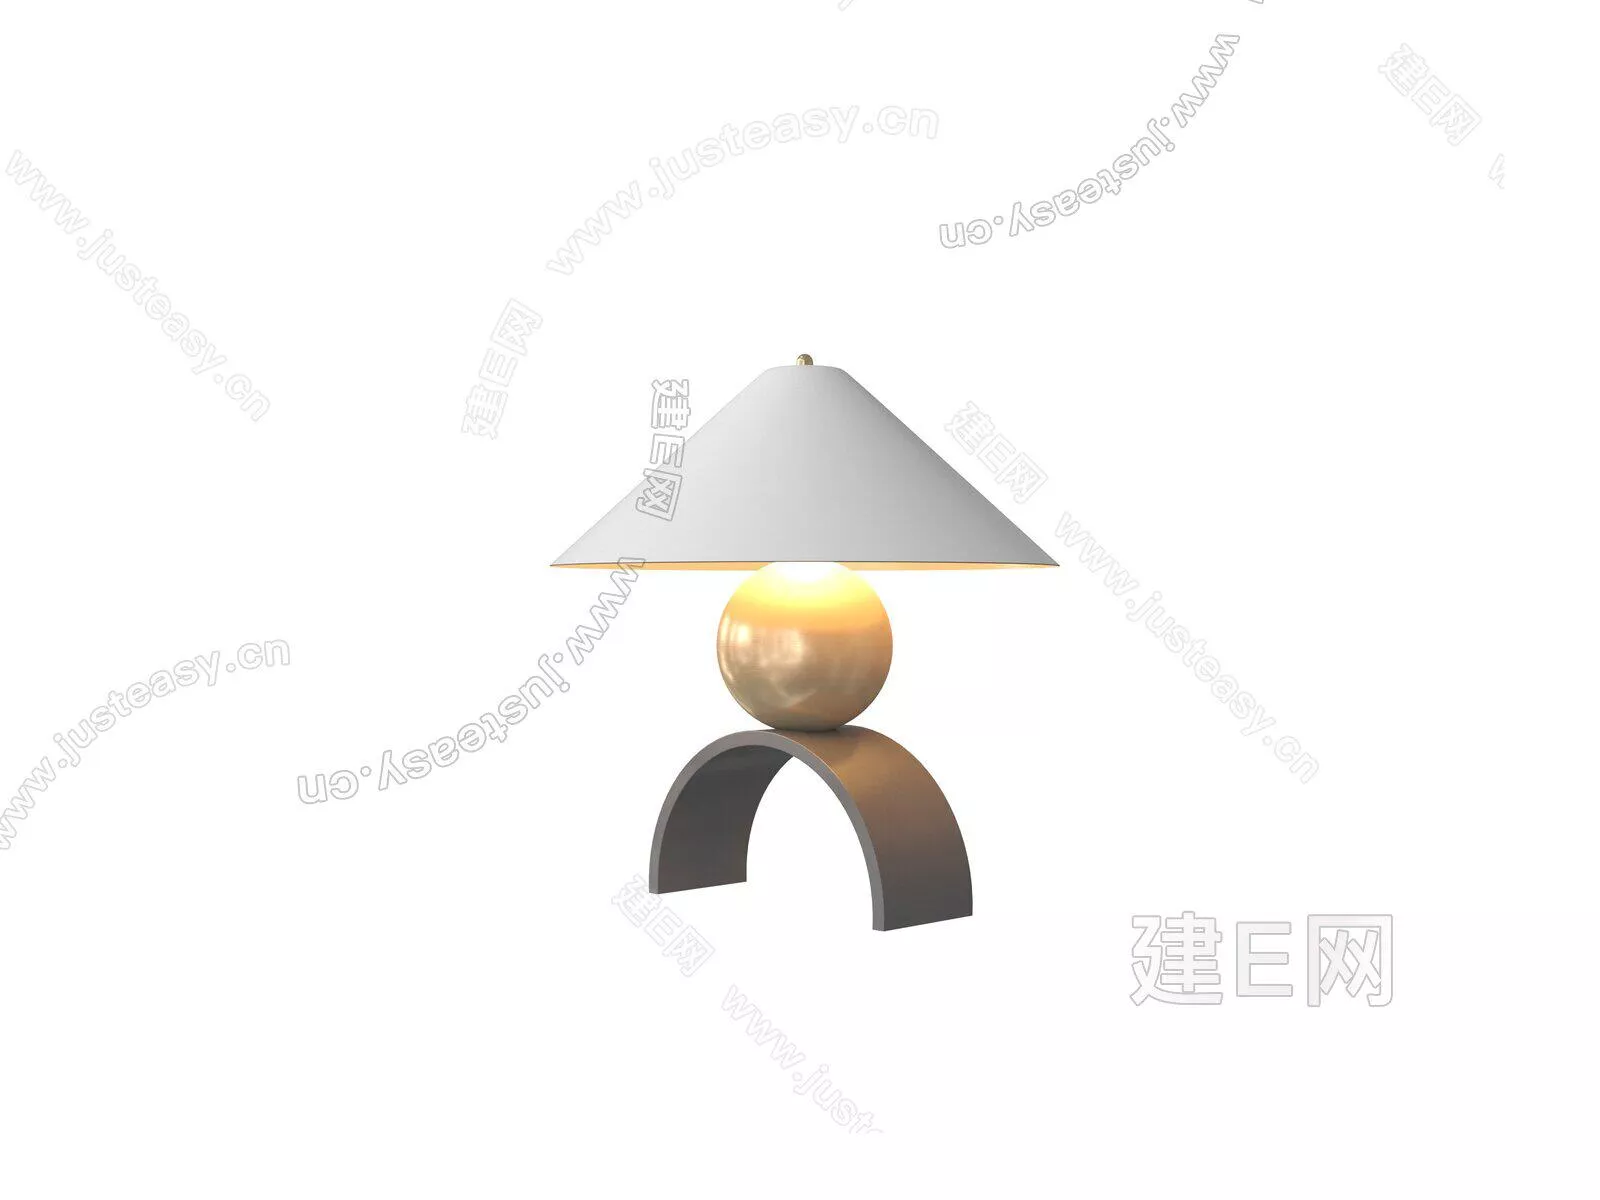 MODERN TABLE LAMP - SKETCHUP 3D MODEL - ENSCAPE - 104941752